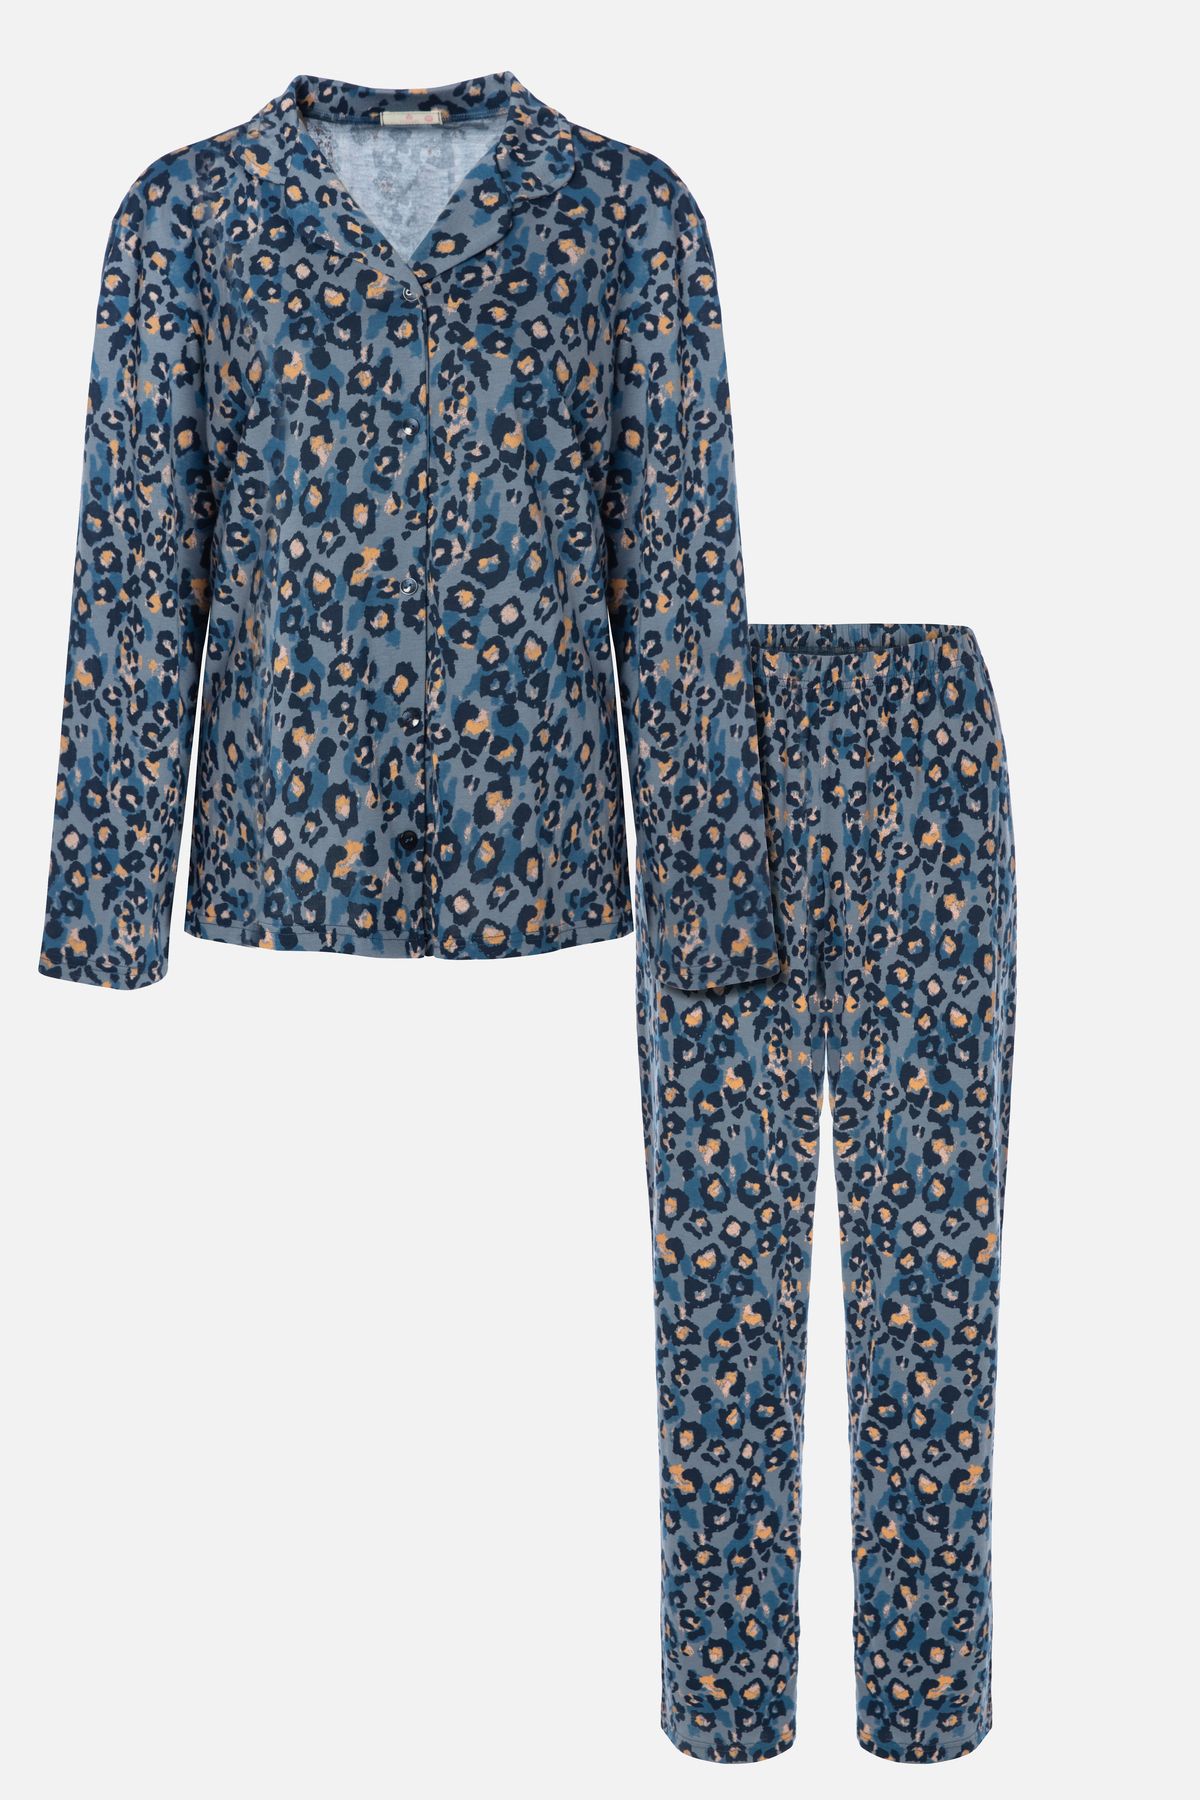 koza iç giyim Kadın Mavi Leopar Desenli Düğmeli Pamuklu Gömlek Yaka Uzun Kollu pijama takımı